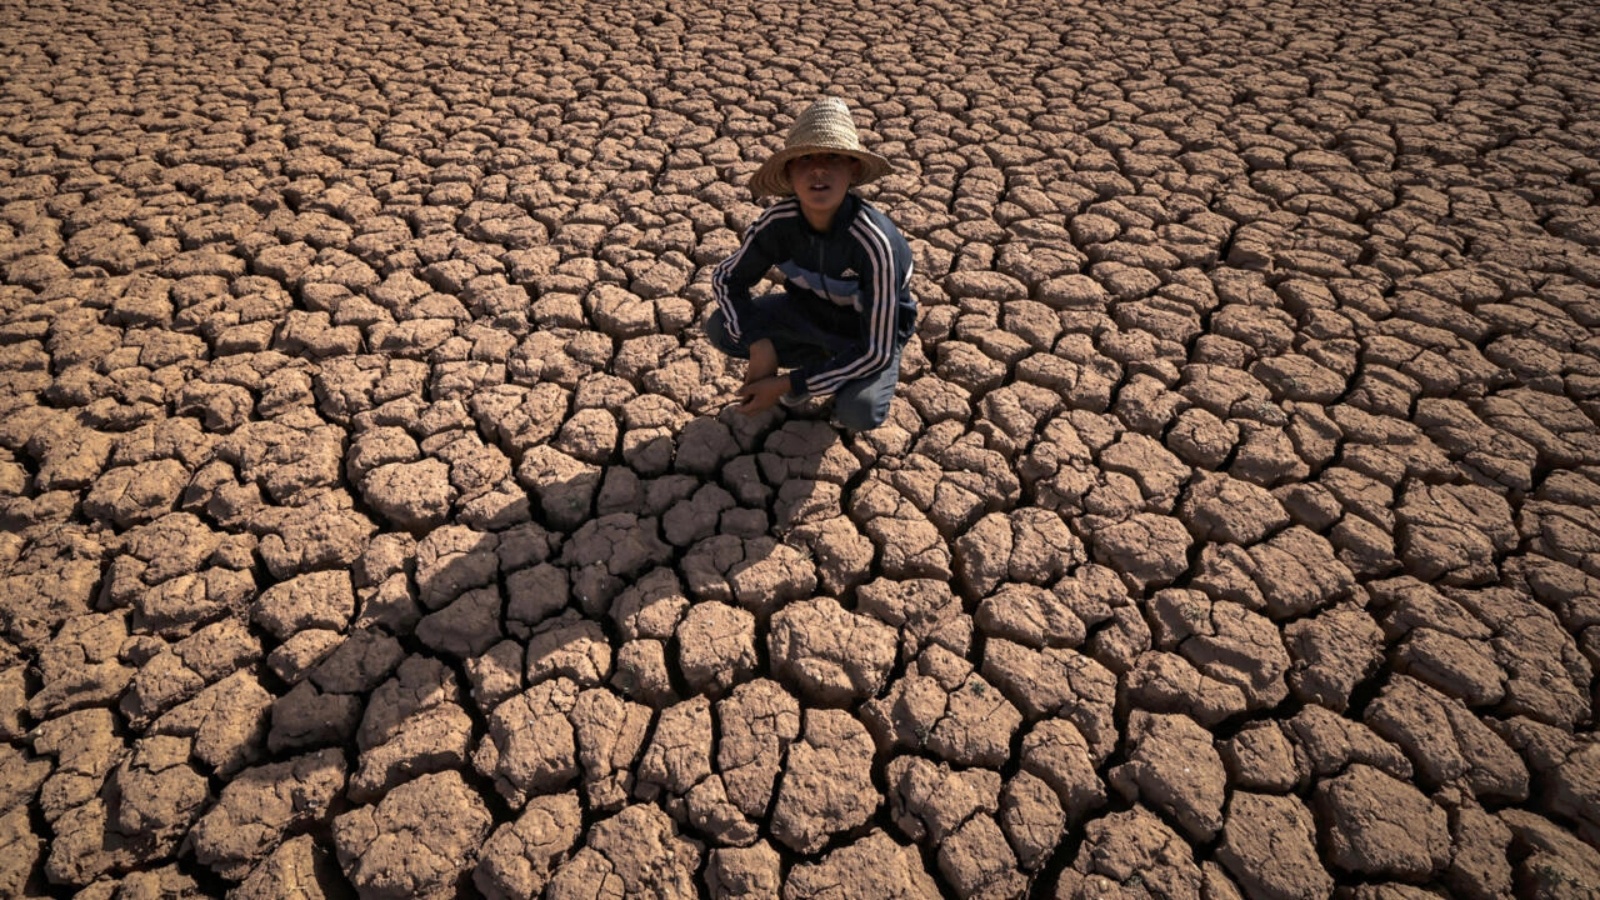 طفل يجلس على أرض مشققة بسبب الجفاف قرب سد المسيرة على بعد 140 كيلومتراً من الدار البيضاء في الثامن من أغسطس 2022 